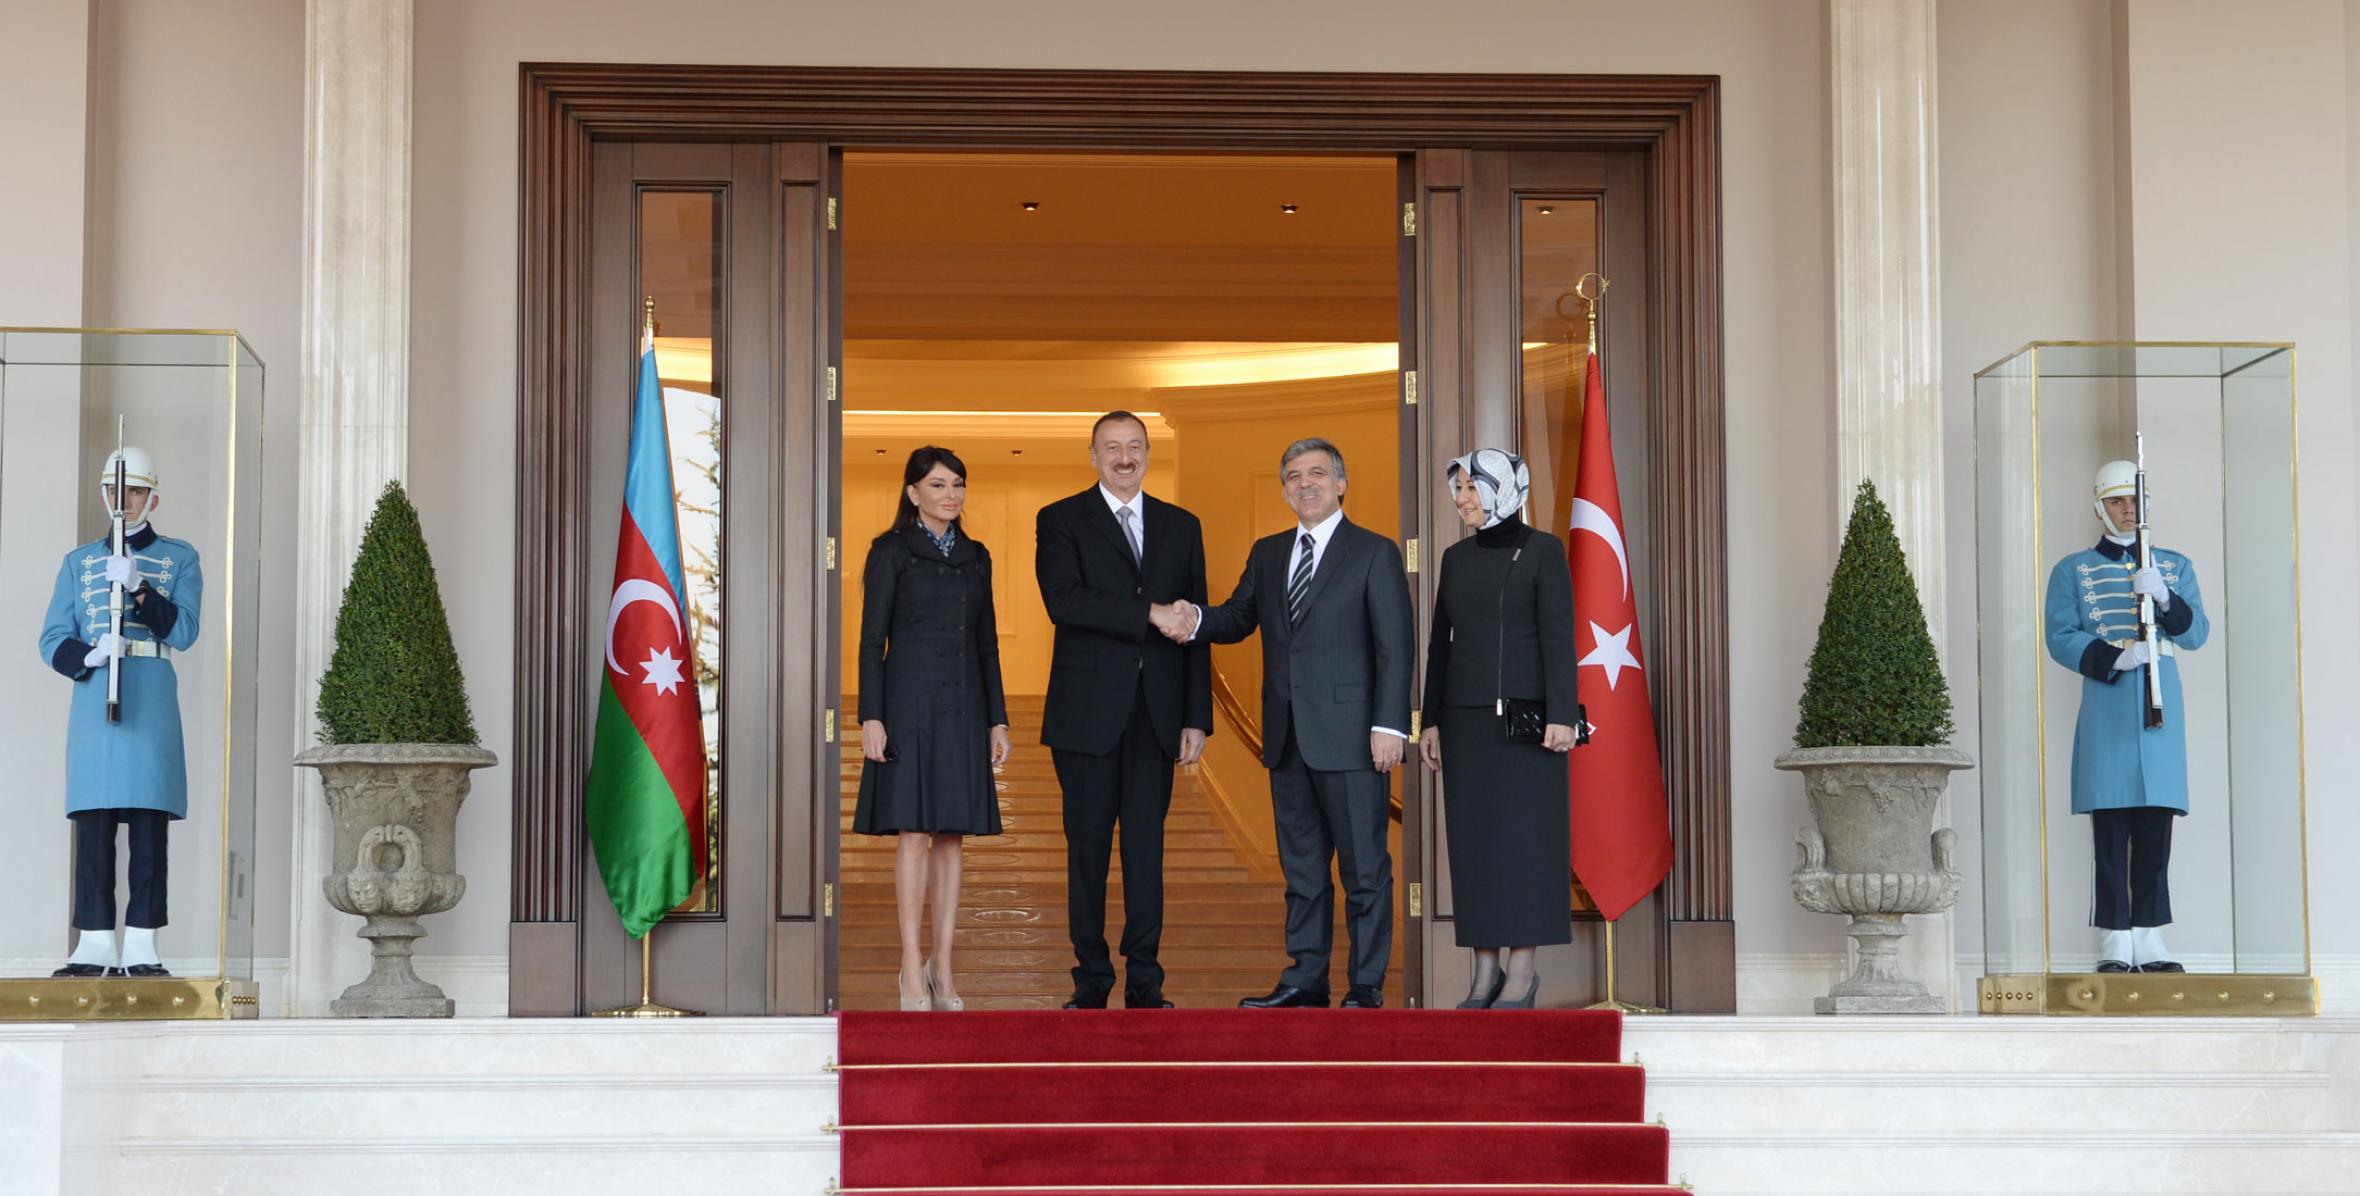 Состоялась церемония официальной встречи Ильхама Алиева в президентском дворце Чанкая